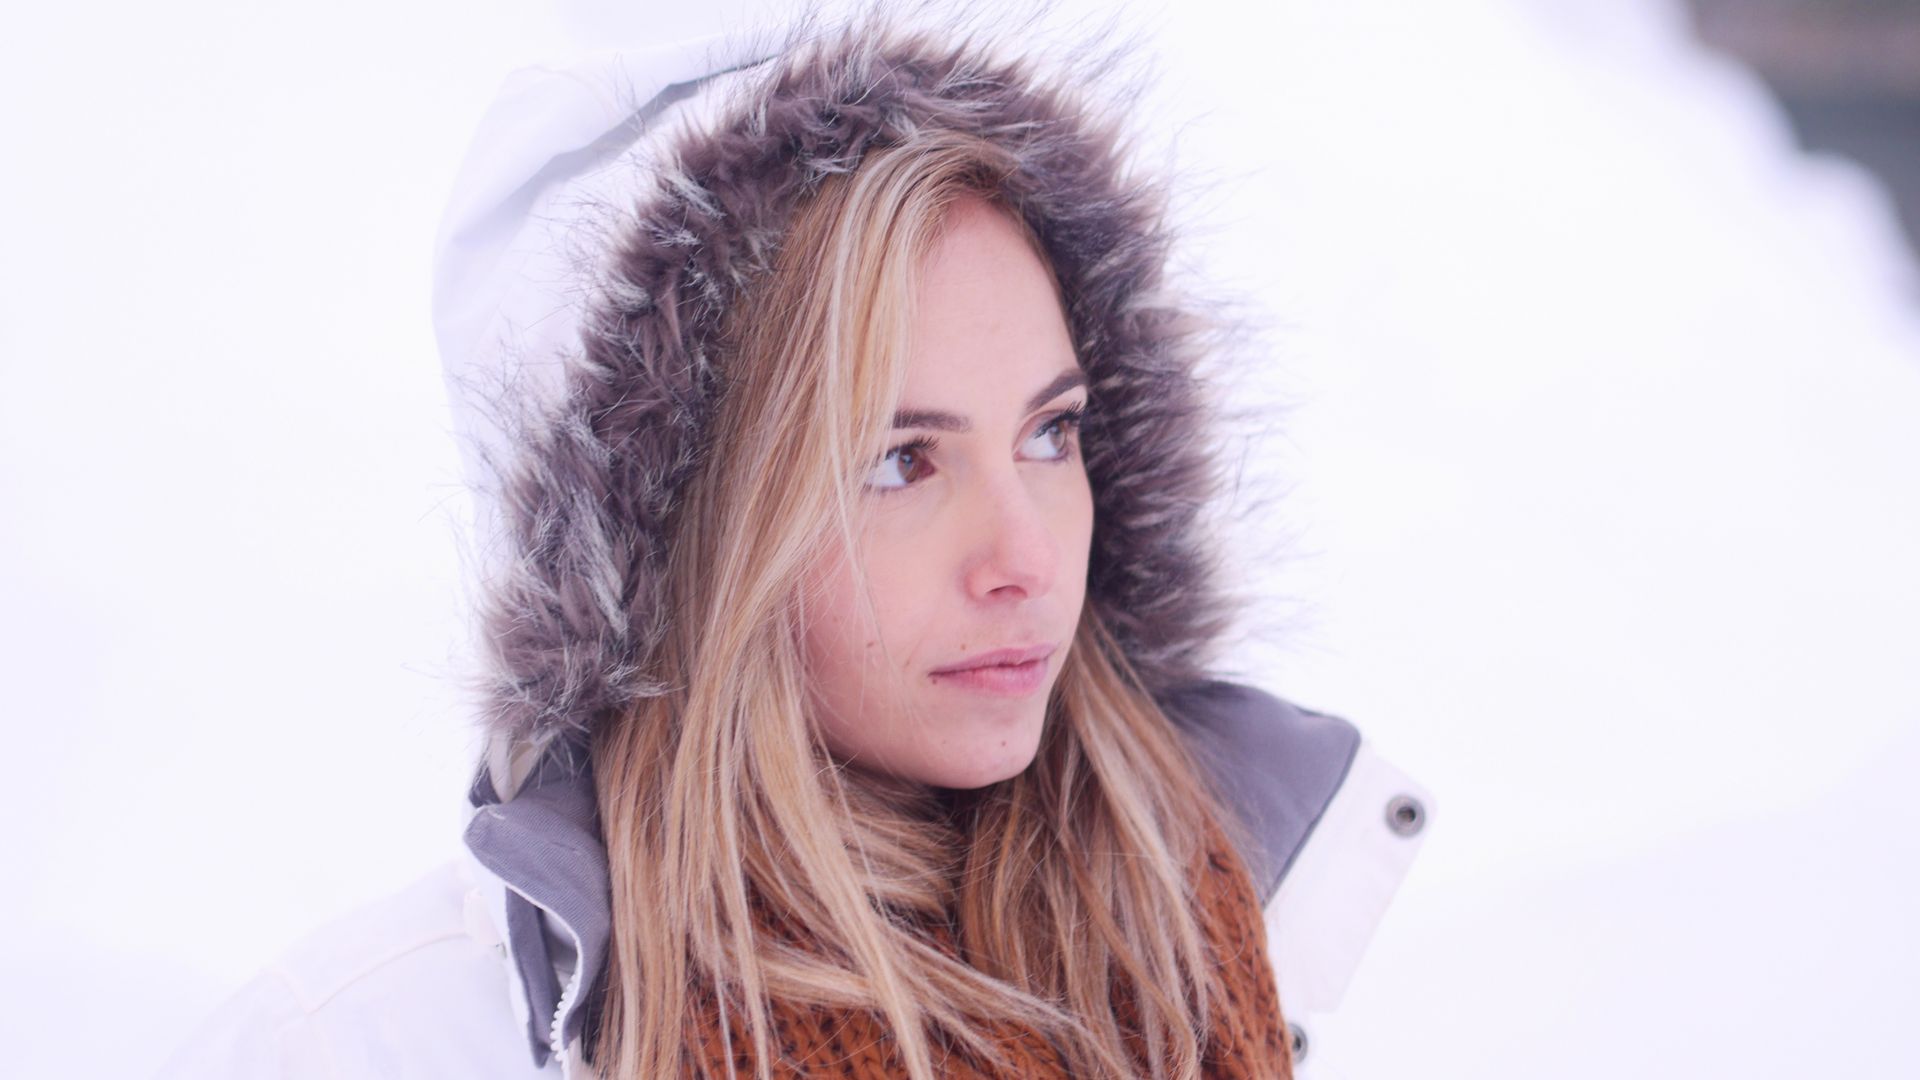 Wallpaper Girl model, hat, winter